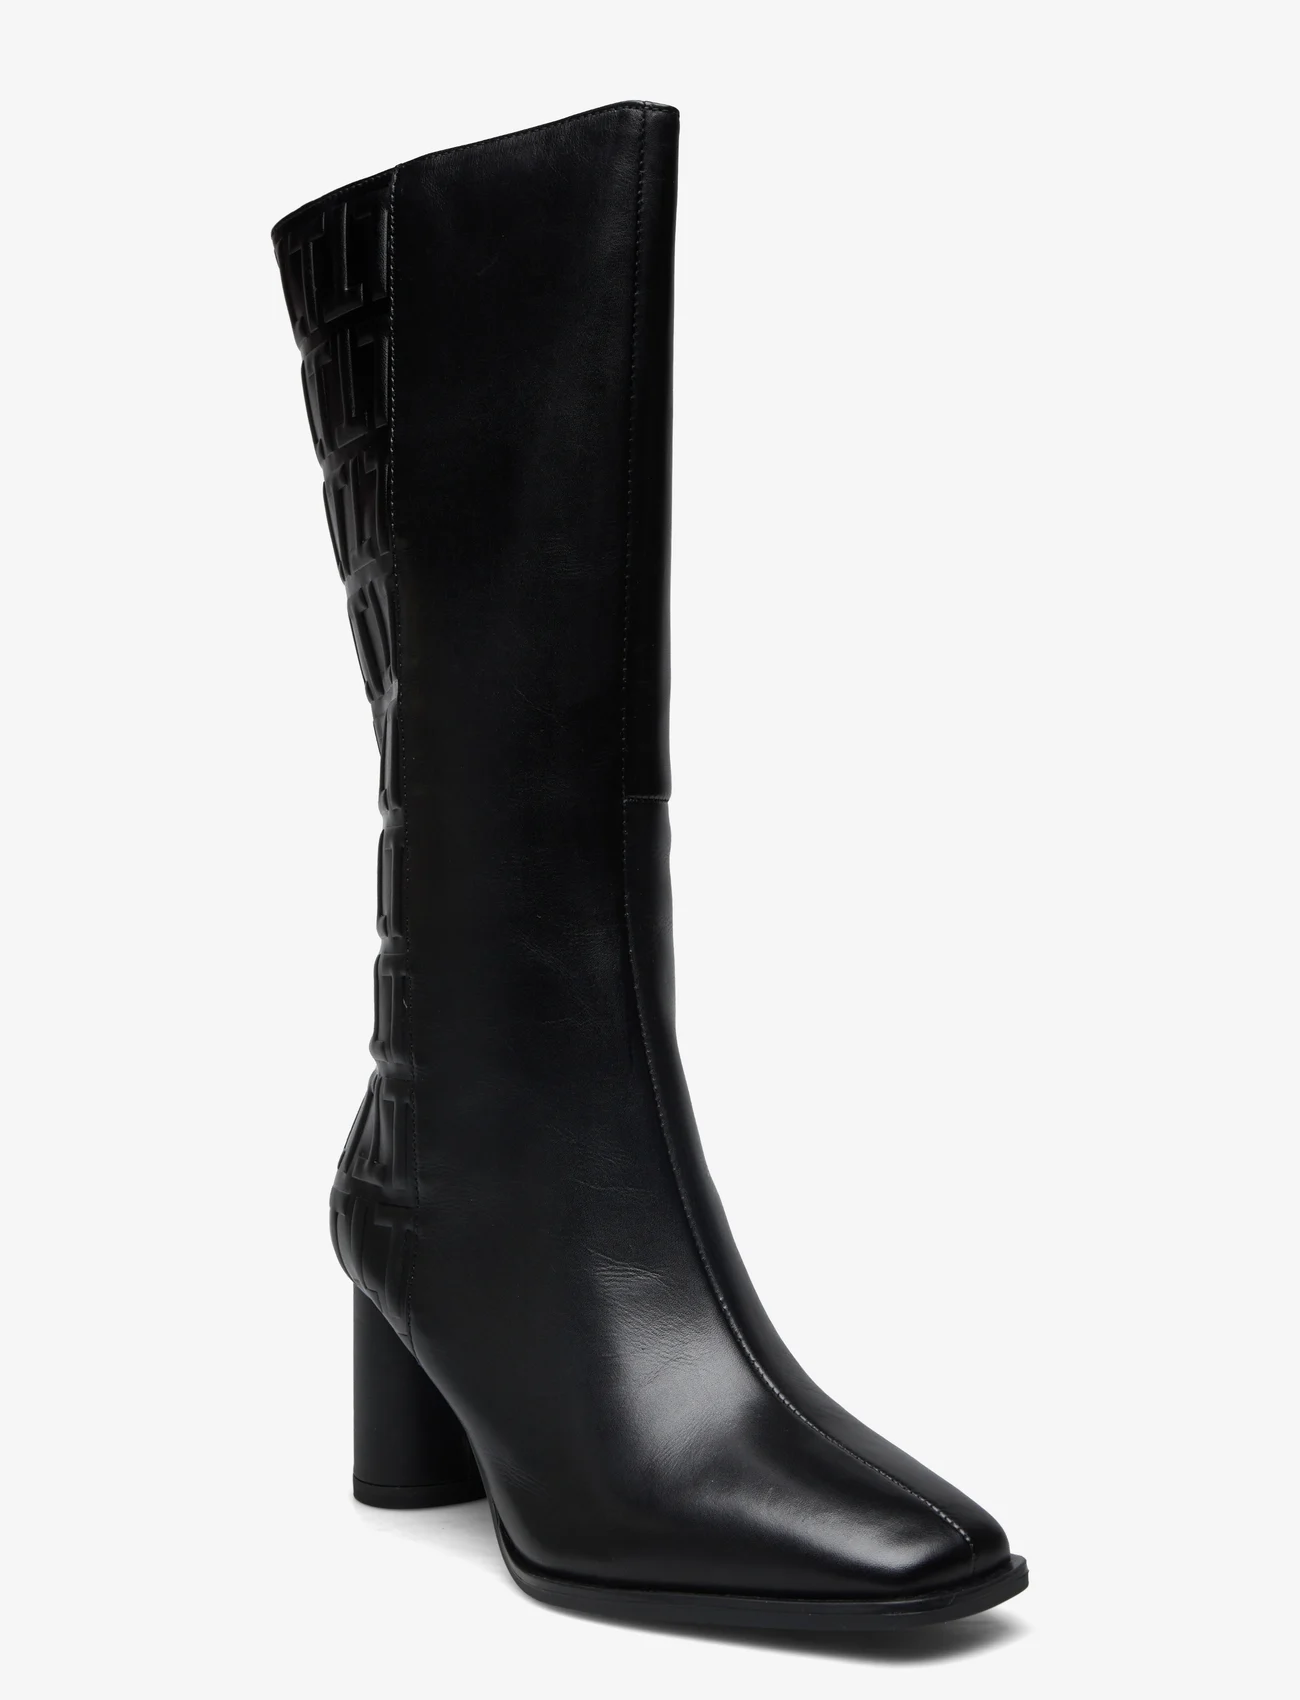 Tamaris - Woms Boots - Lycoris - lange laarzen - black - 0